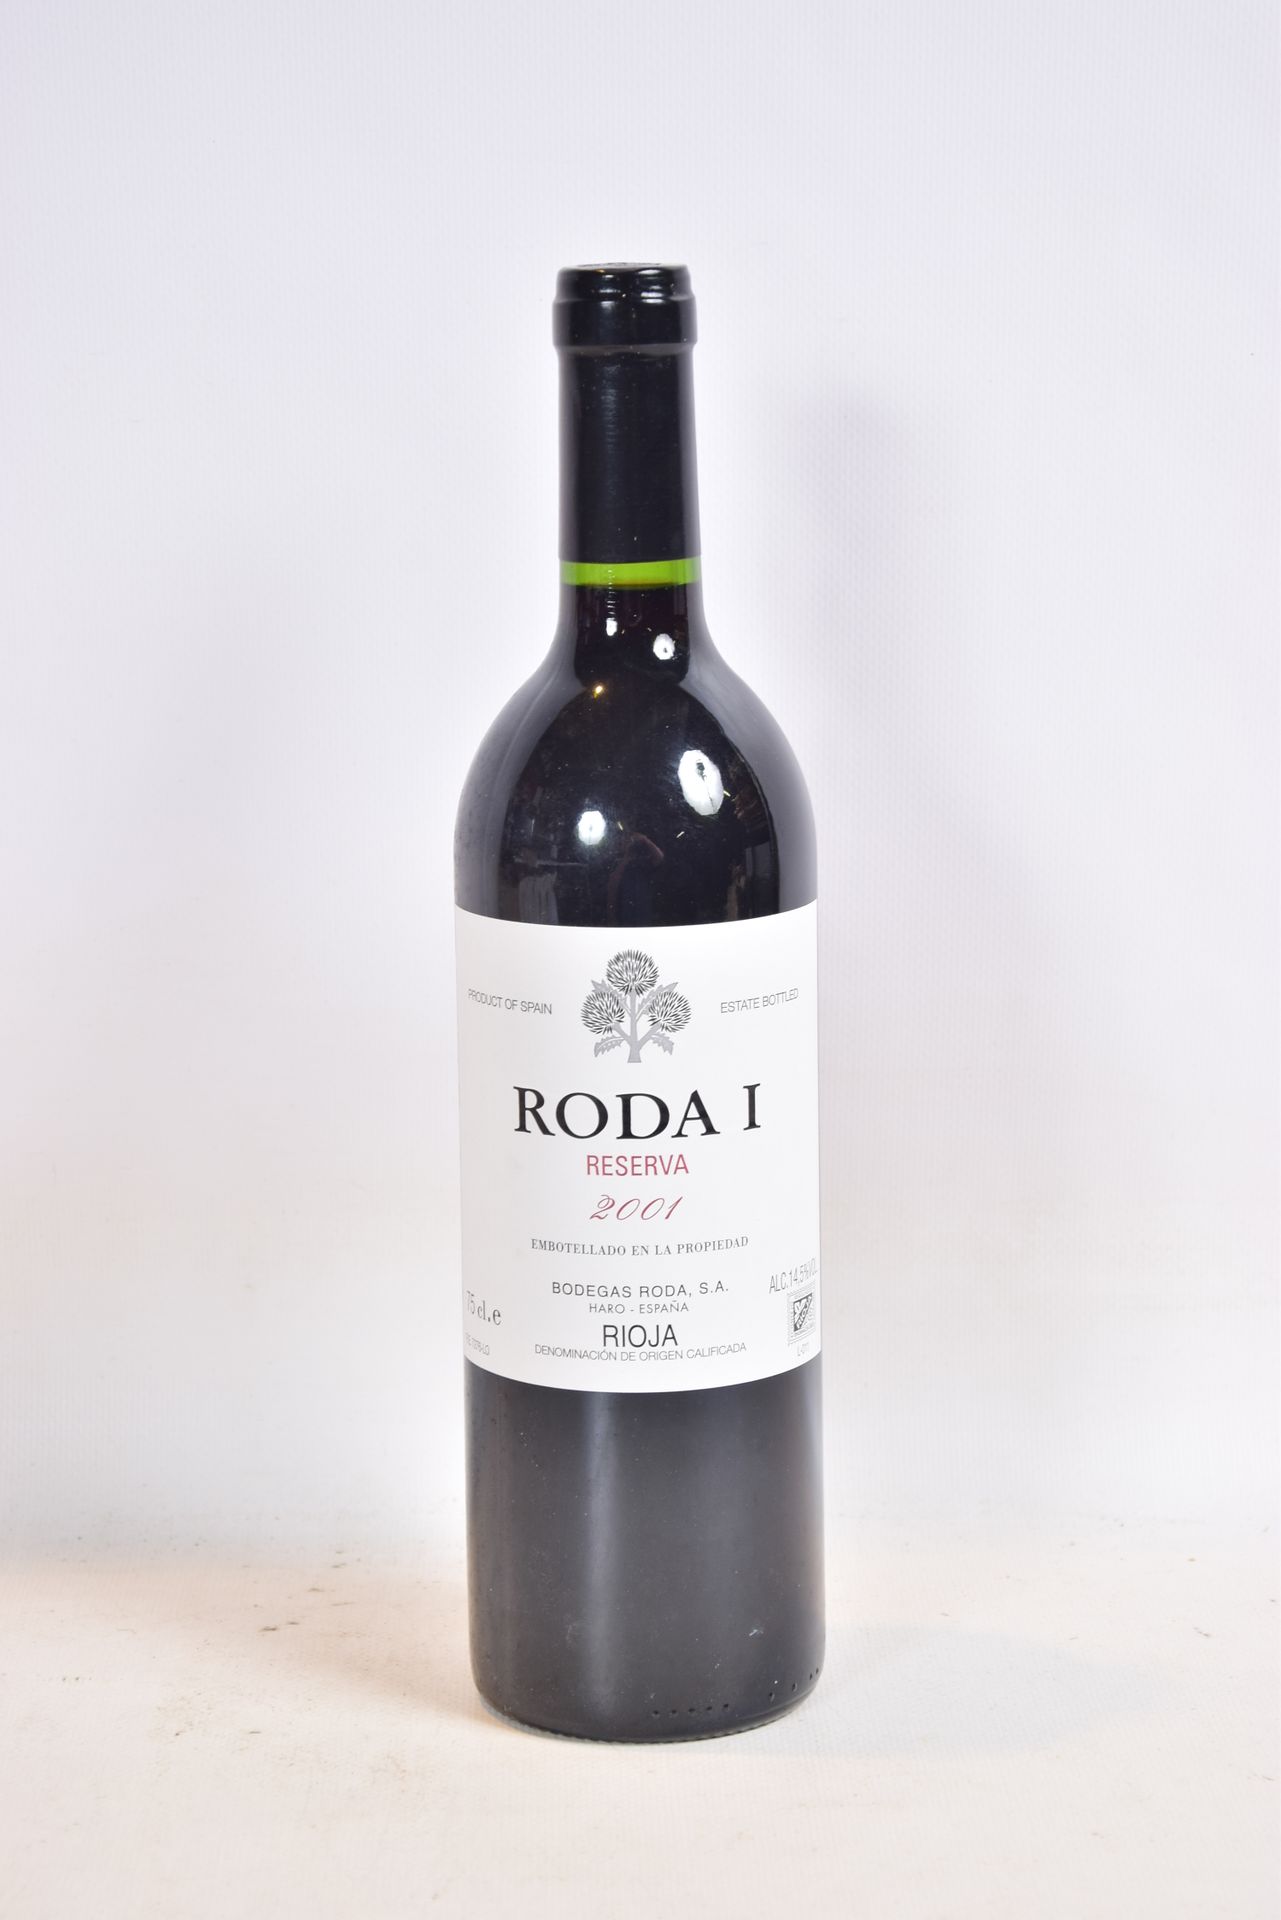 Null 1 Blle Rioja RODA 1 Reserva mise Bodegas Roda (Spagna) 2001

	Presentazione&hellip;